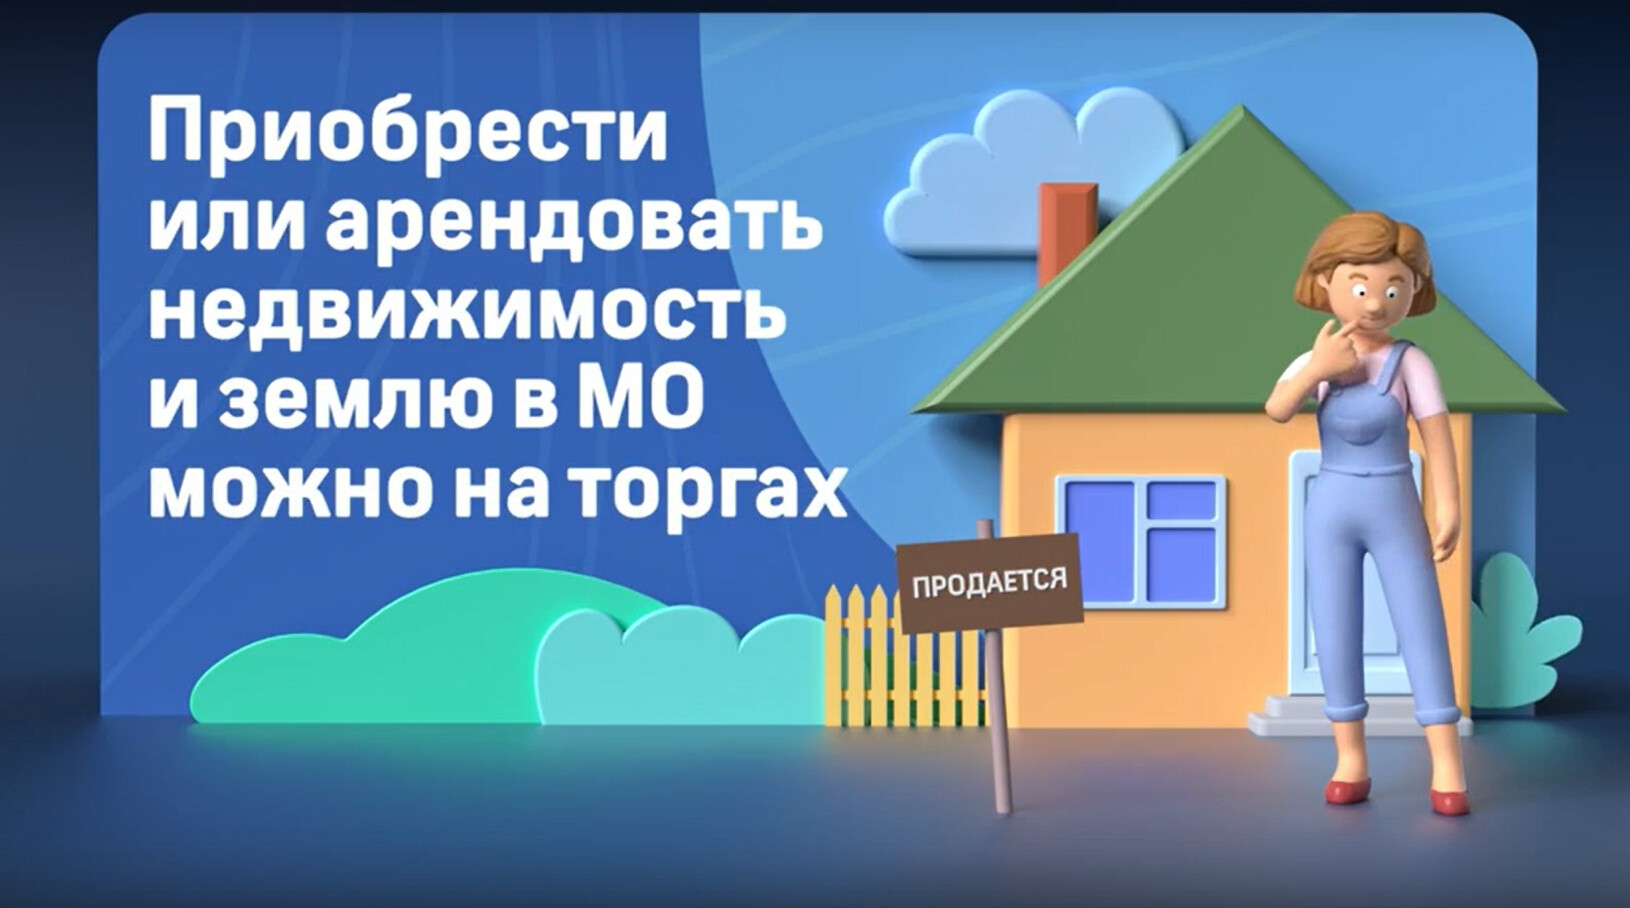 Ореховозуевцы могут приобрести или арендовать недвижимость и землю в Московской области на торгах